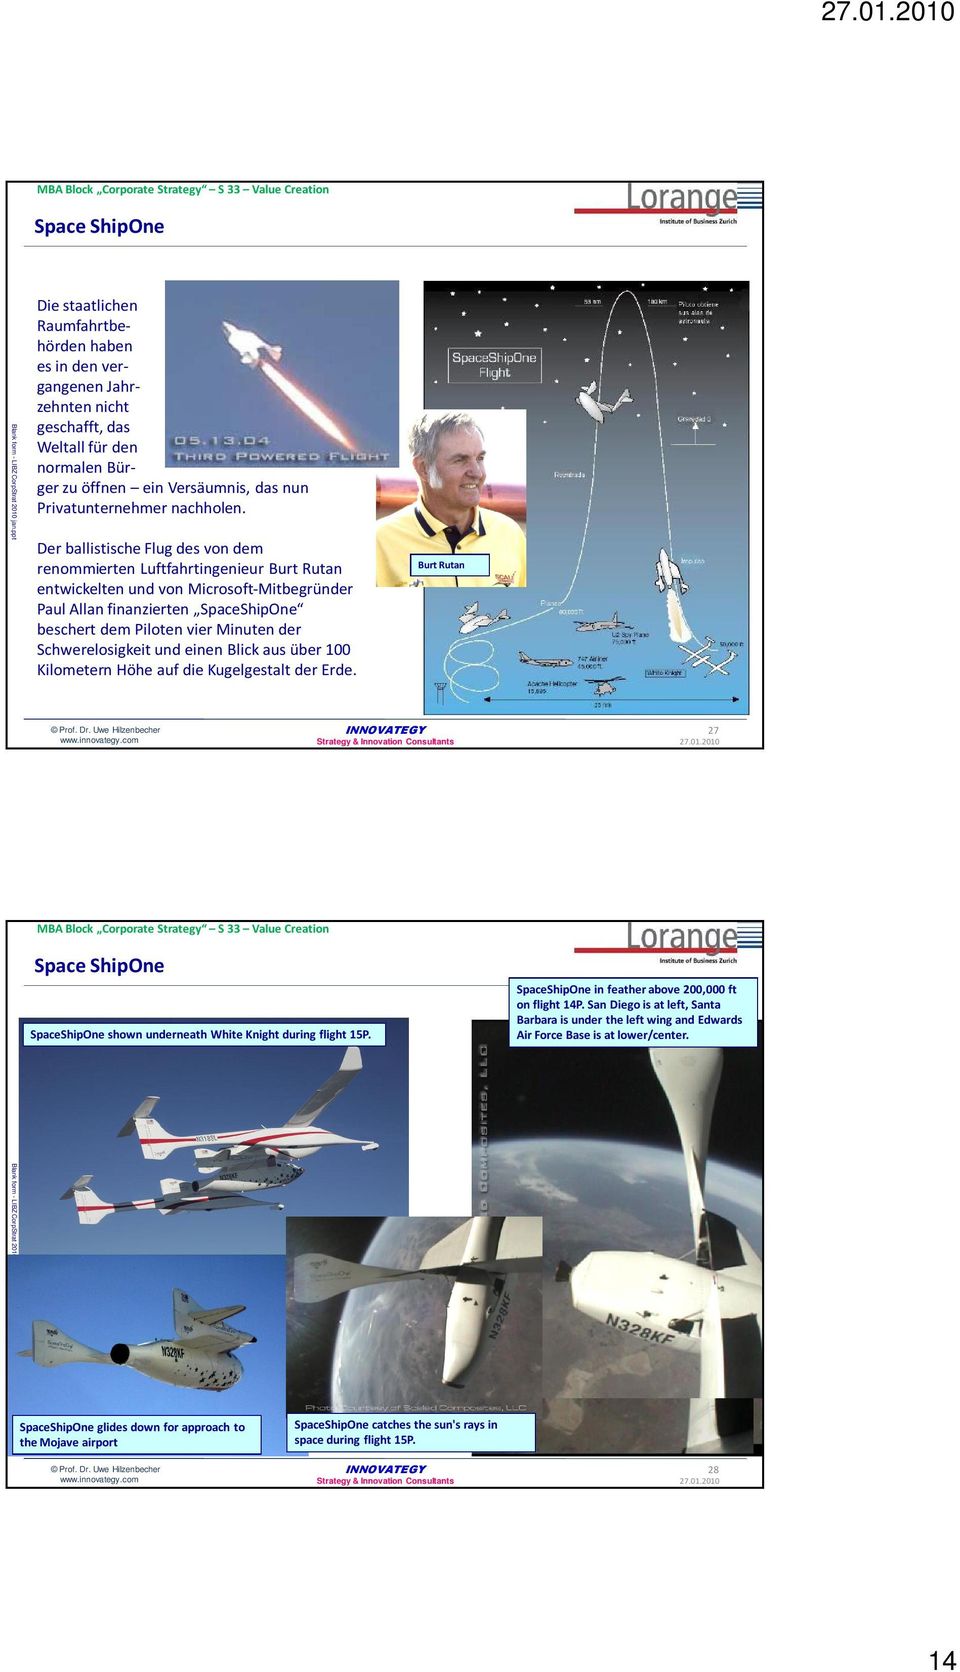 Der ballistische Flug des von dem renommierten Luftfahrtingenieur Burt Rutan entwickelten und von Microsoft-Mitbegründer Paul Allan finanzierten SpaceShipOne beschert dem Piloten vier Minuten der